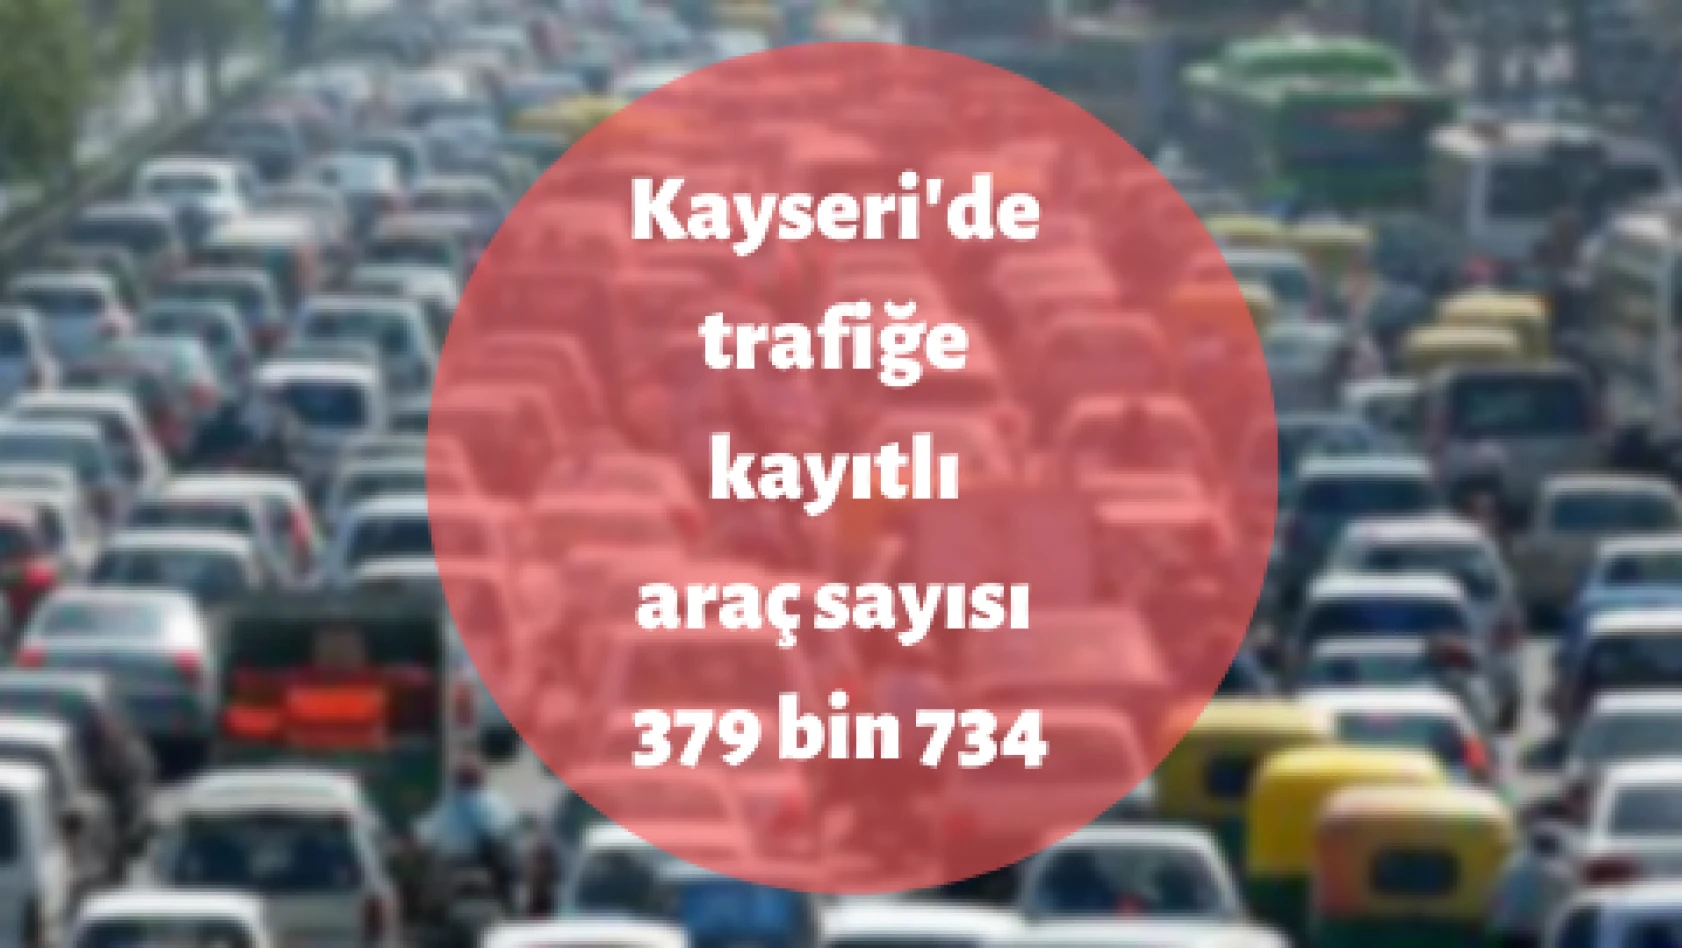 Kayseri'de araç sayısı azaldı